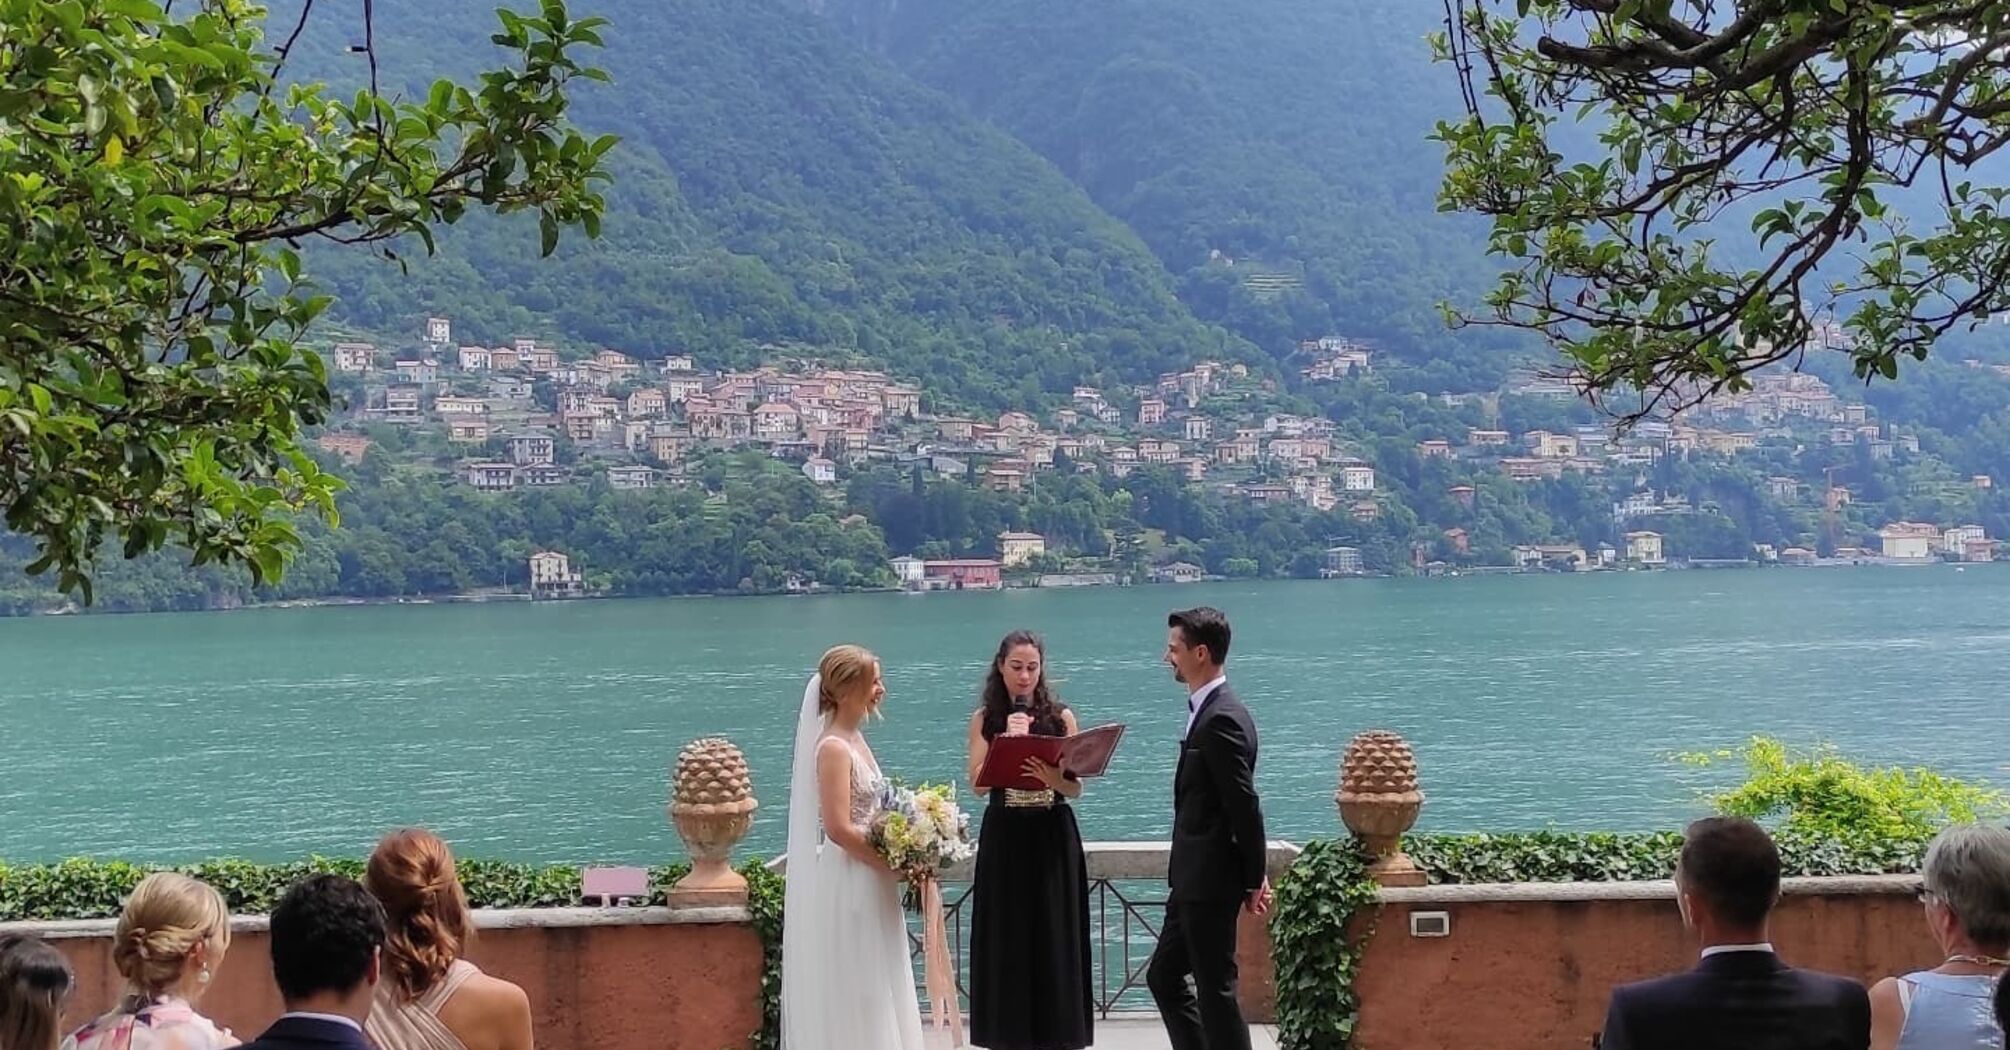 Выбор места для свадьбы в невероятных уголках Италии: популярные локации